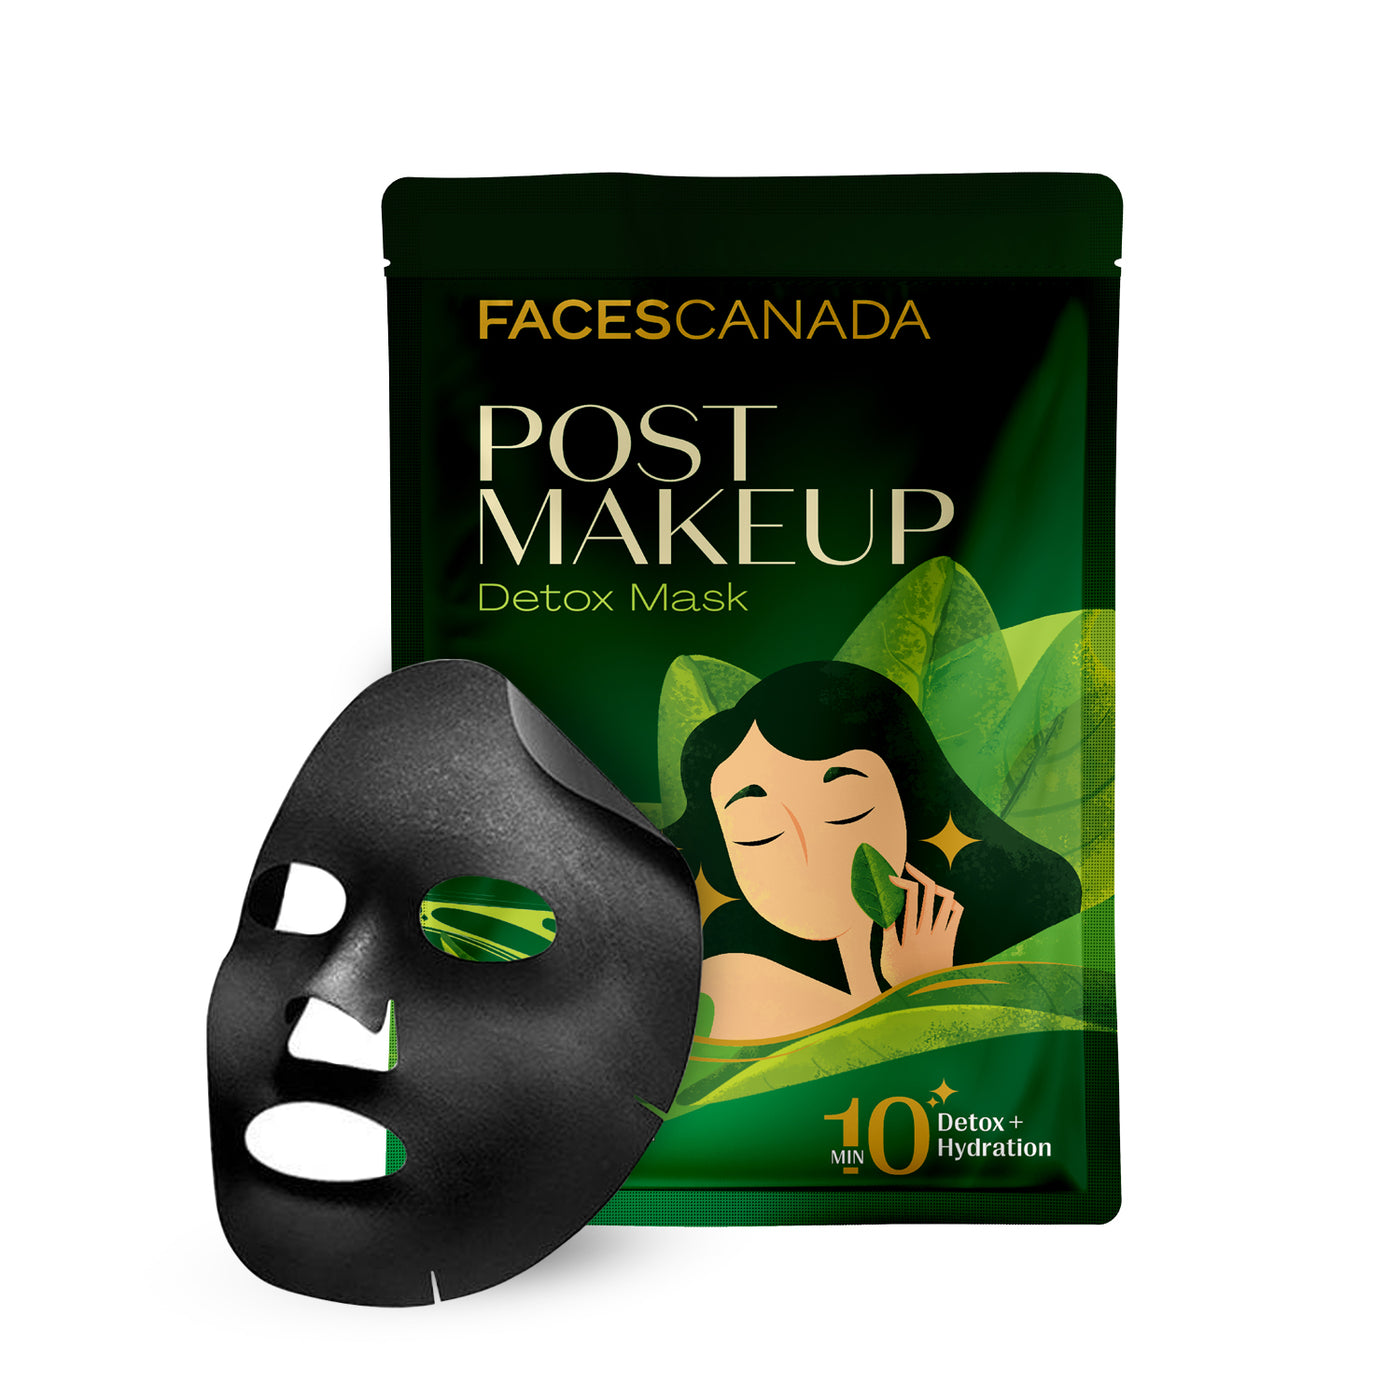 Post-Makeup Detox Mask